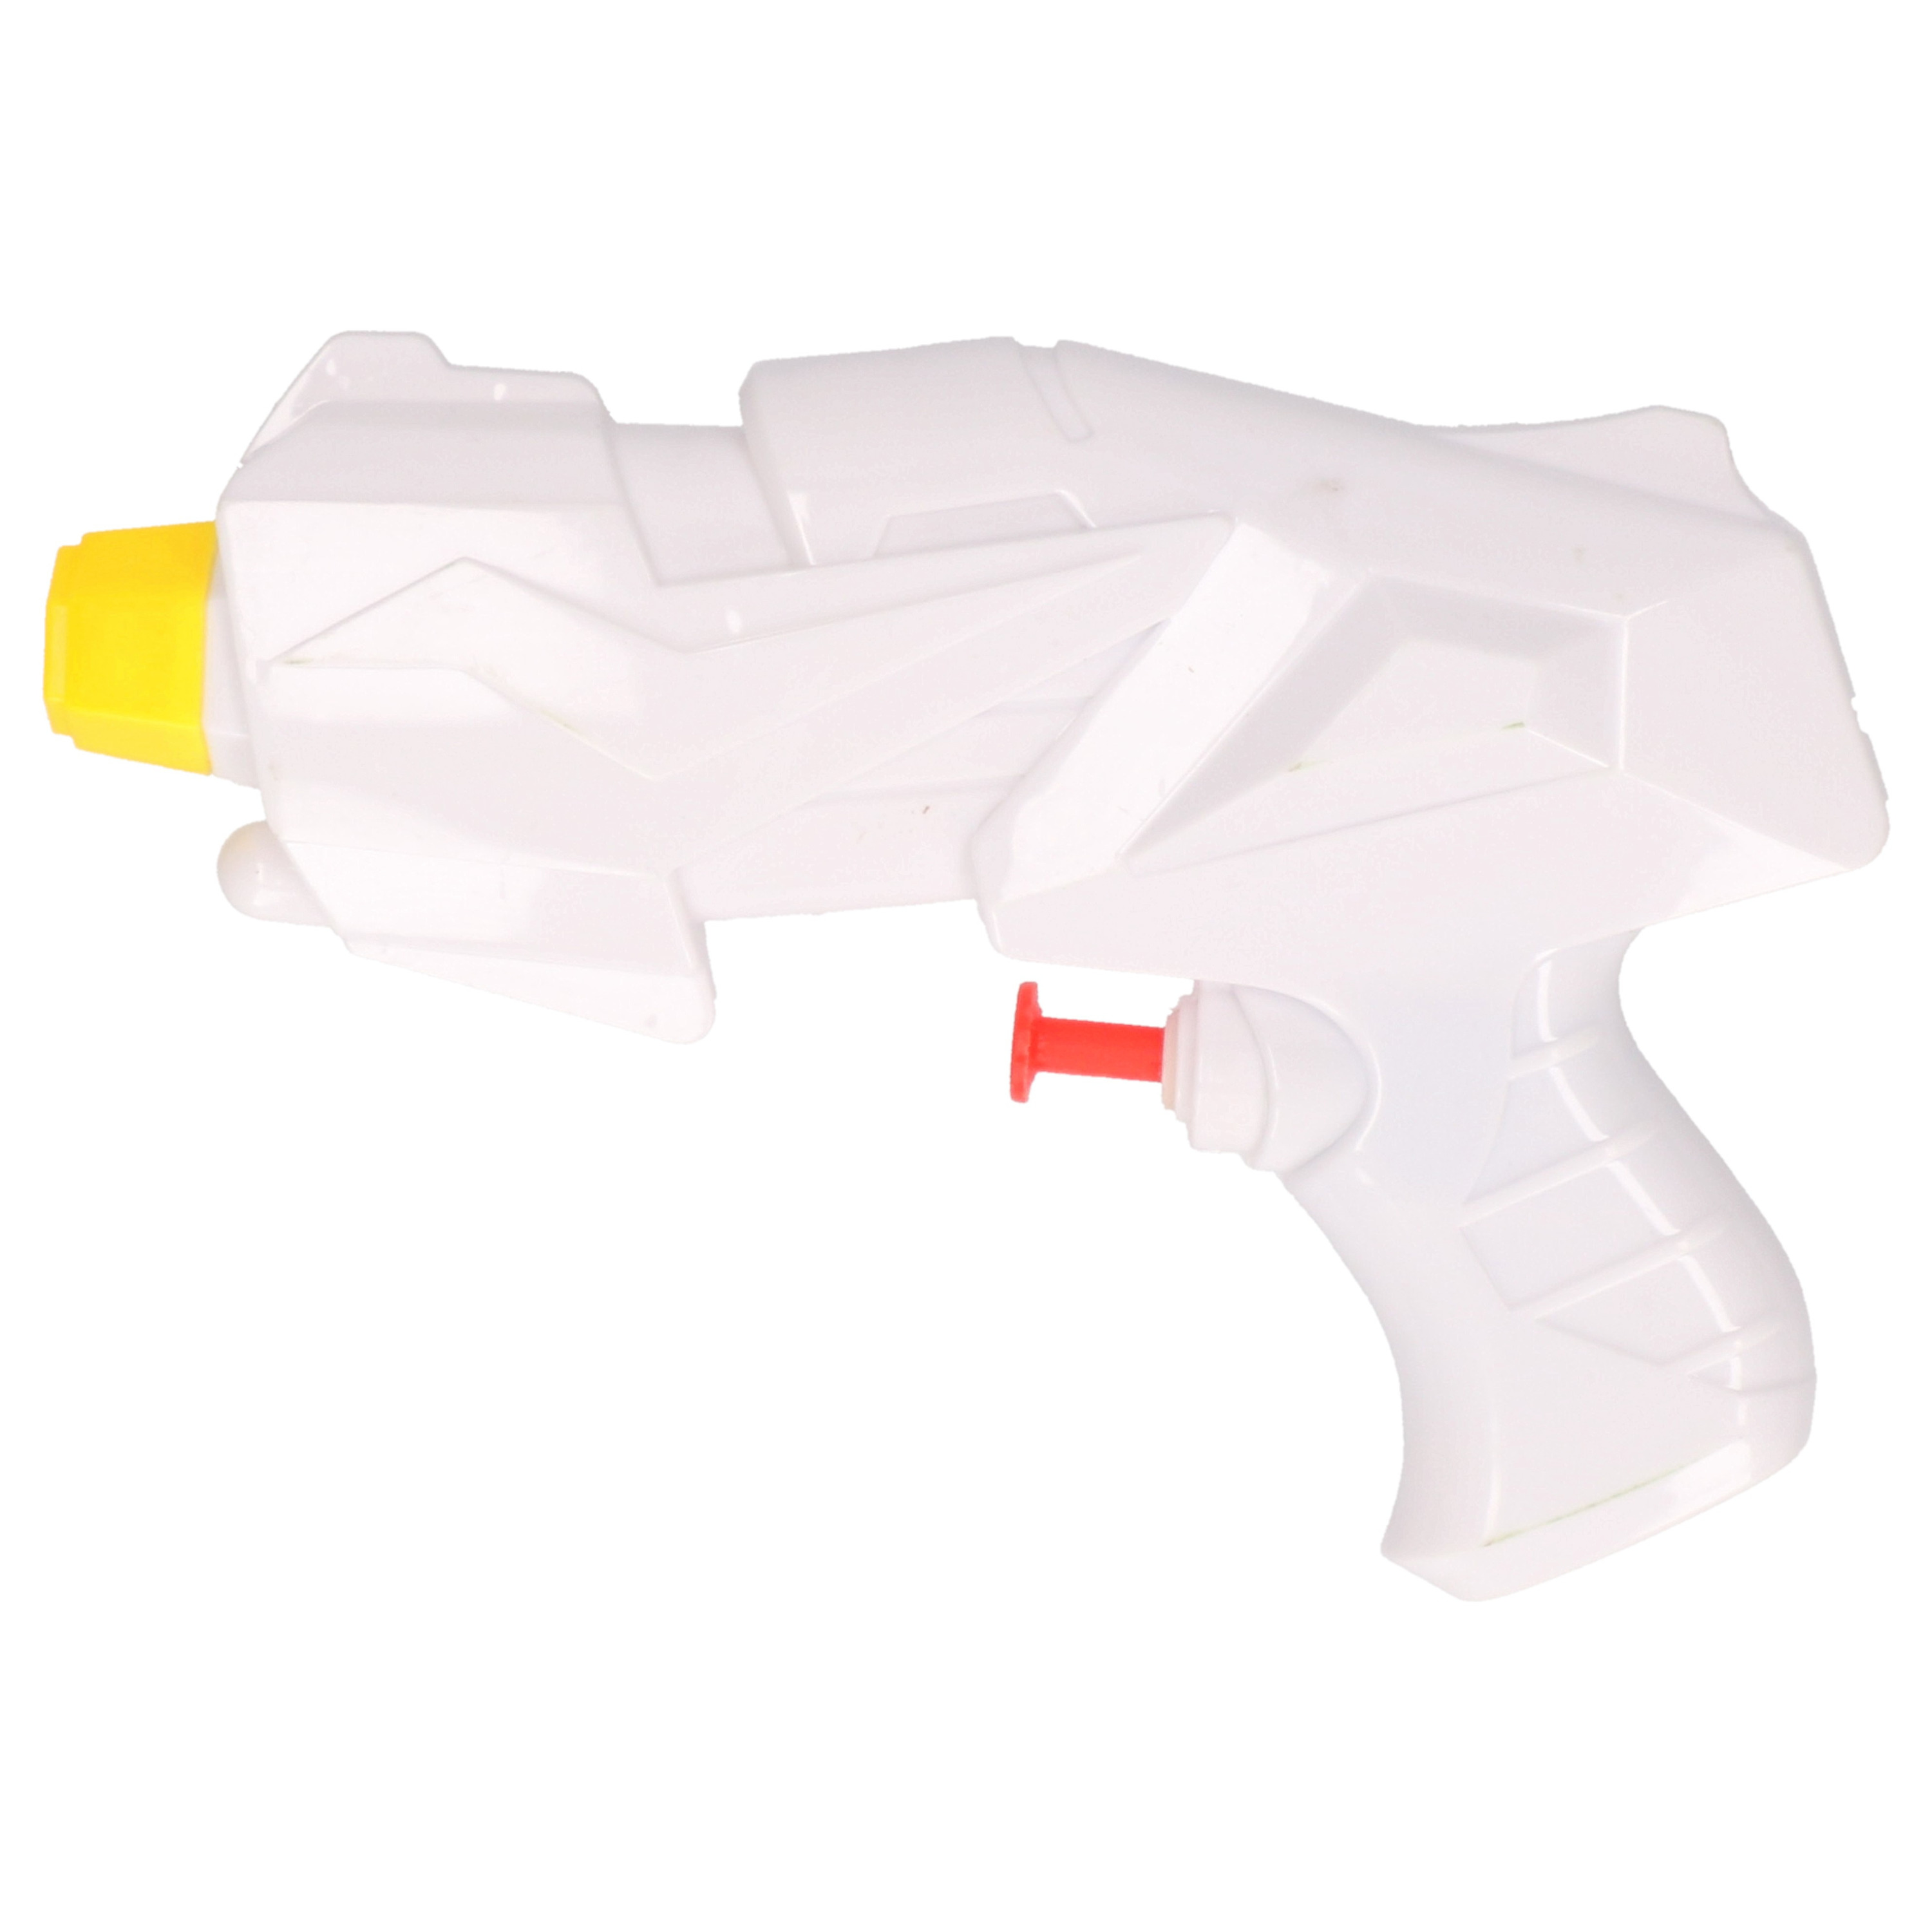 1x Mini waterpistolen/waterpistool wit van 15 cm kinderspeelgoed